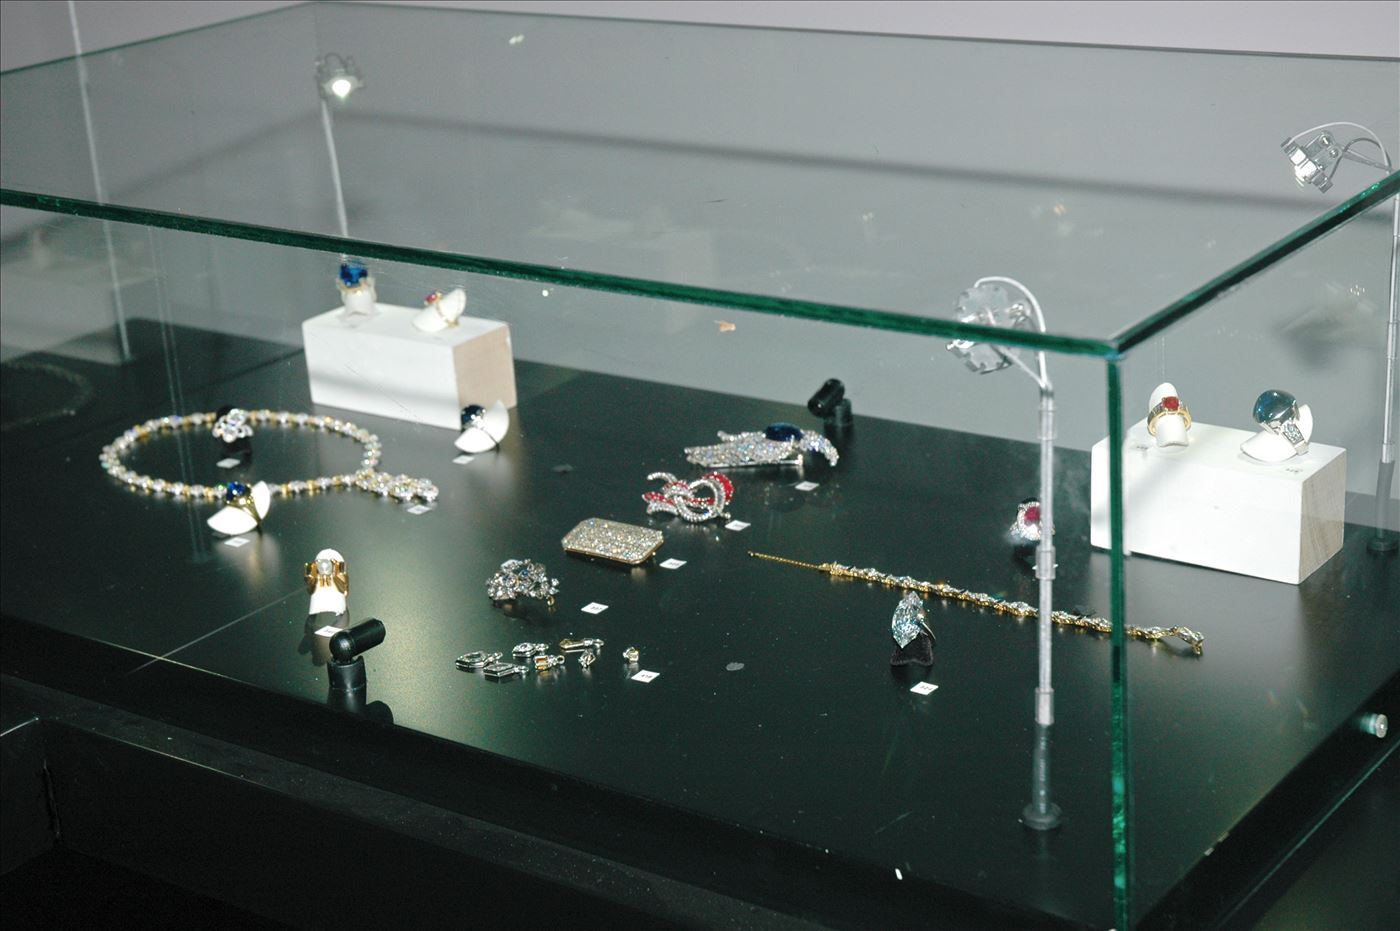 גלרייה - תערוכת תכשיטים במוזיאון - אבנר צופיוף 31.5.2006, 5 מתוך 22